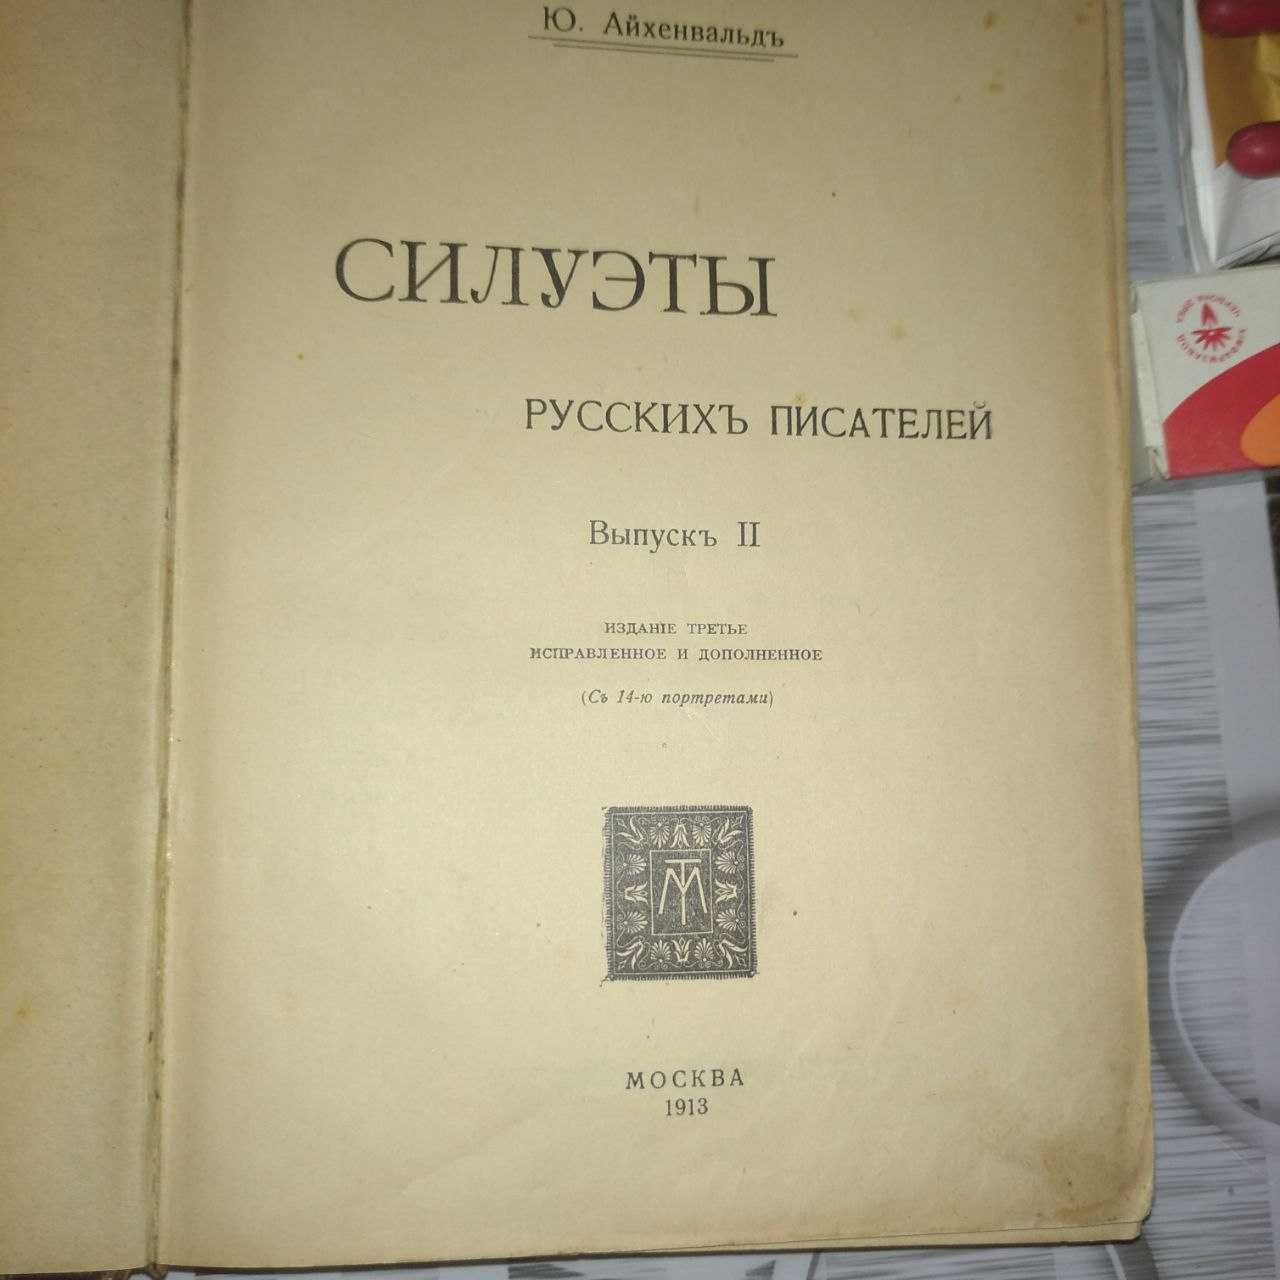 Силуэты 2 тома 1913-1914 год